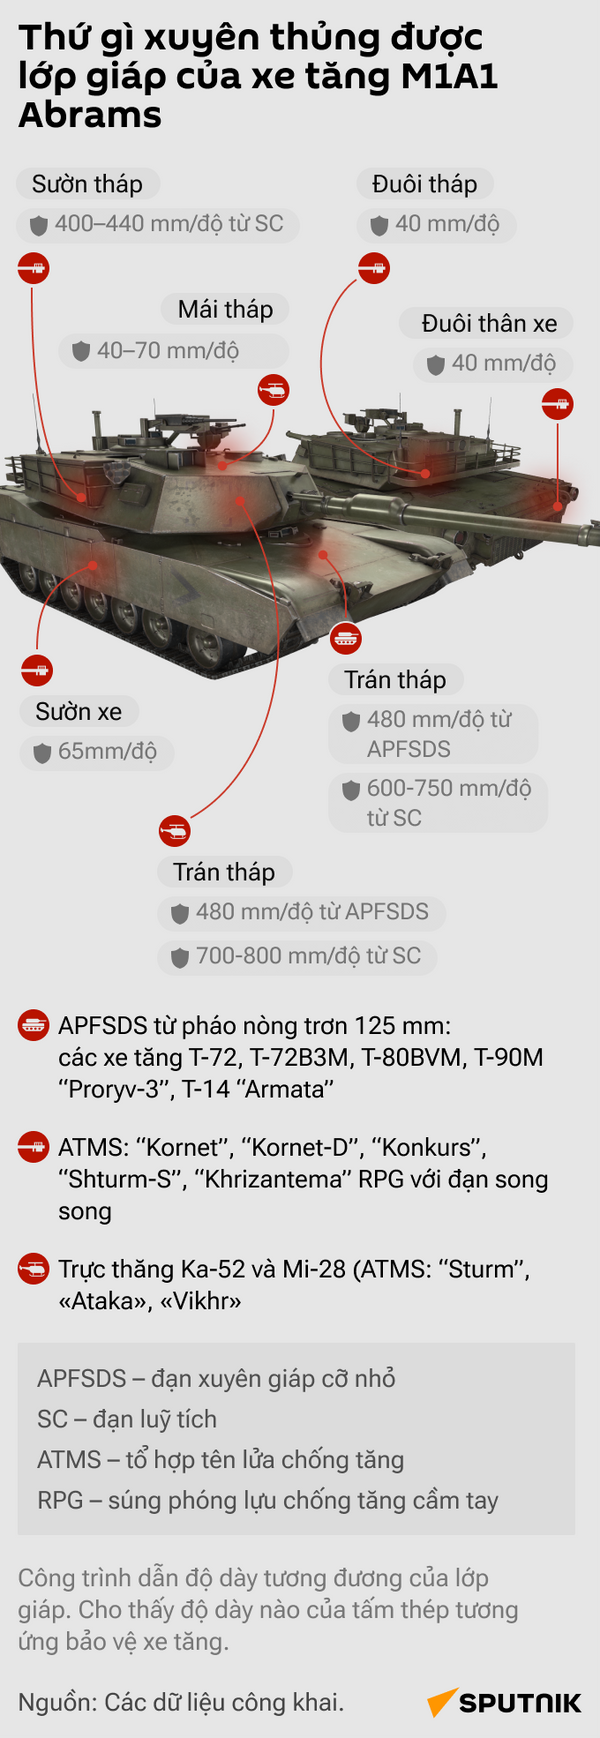 Thứ gì xuyên thủng được lớp giáp của xe tăng M1A1 Abrams - Sputnik Việt Nam